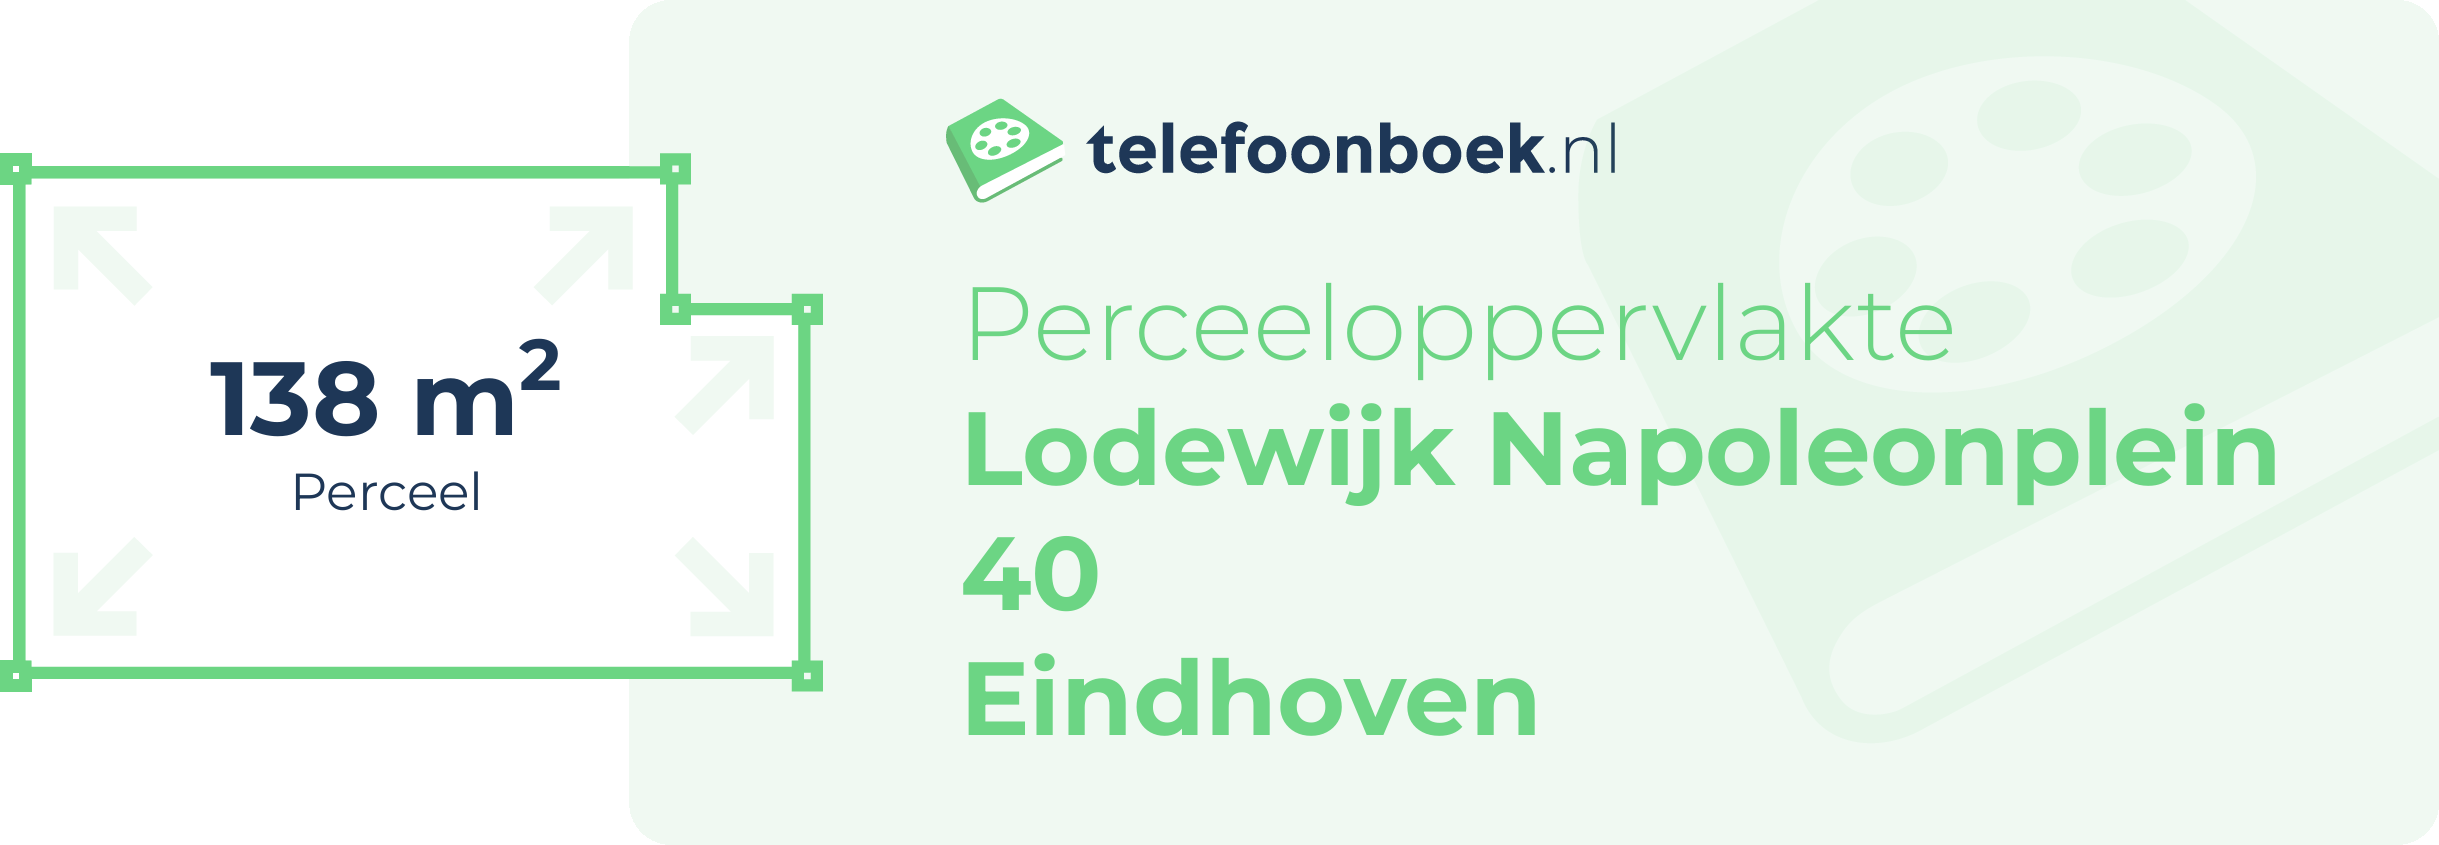 Perceeloppervlakte Lodewijk Napoleonplein 40 Eindhoven